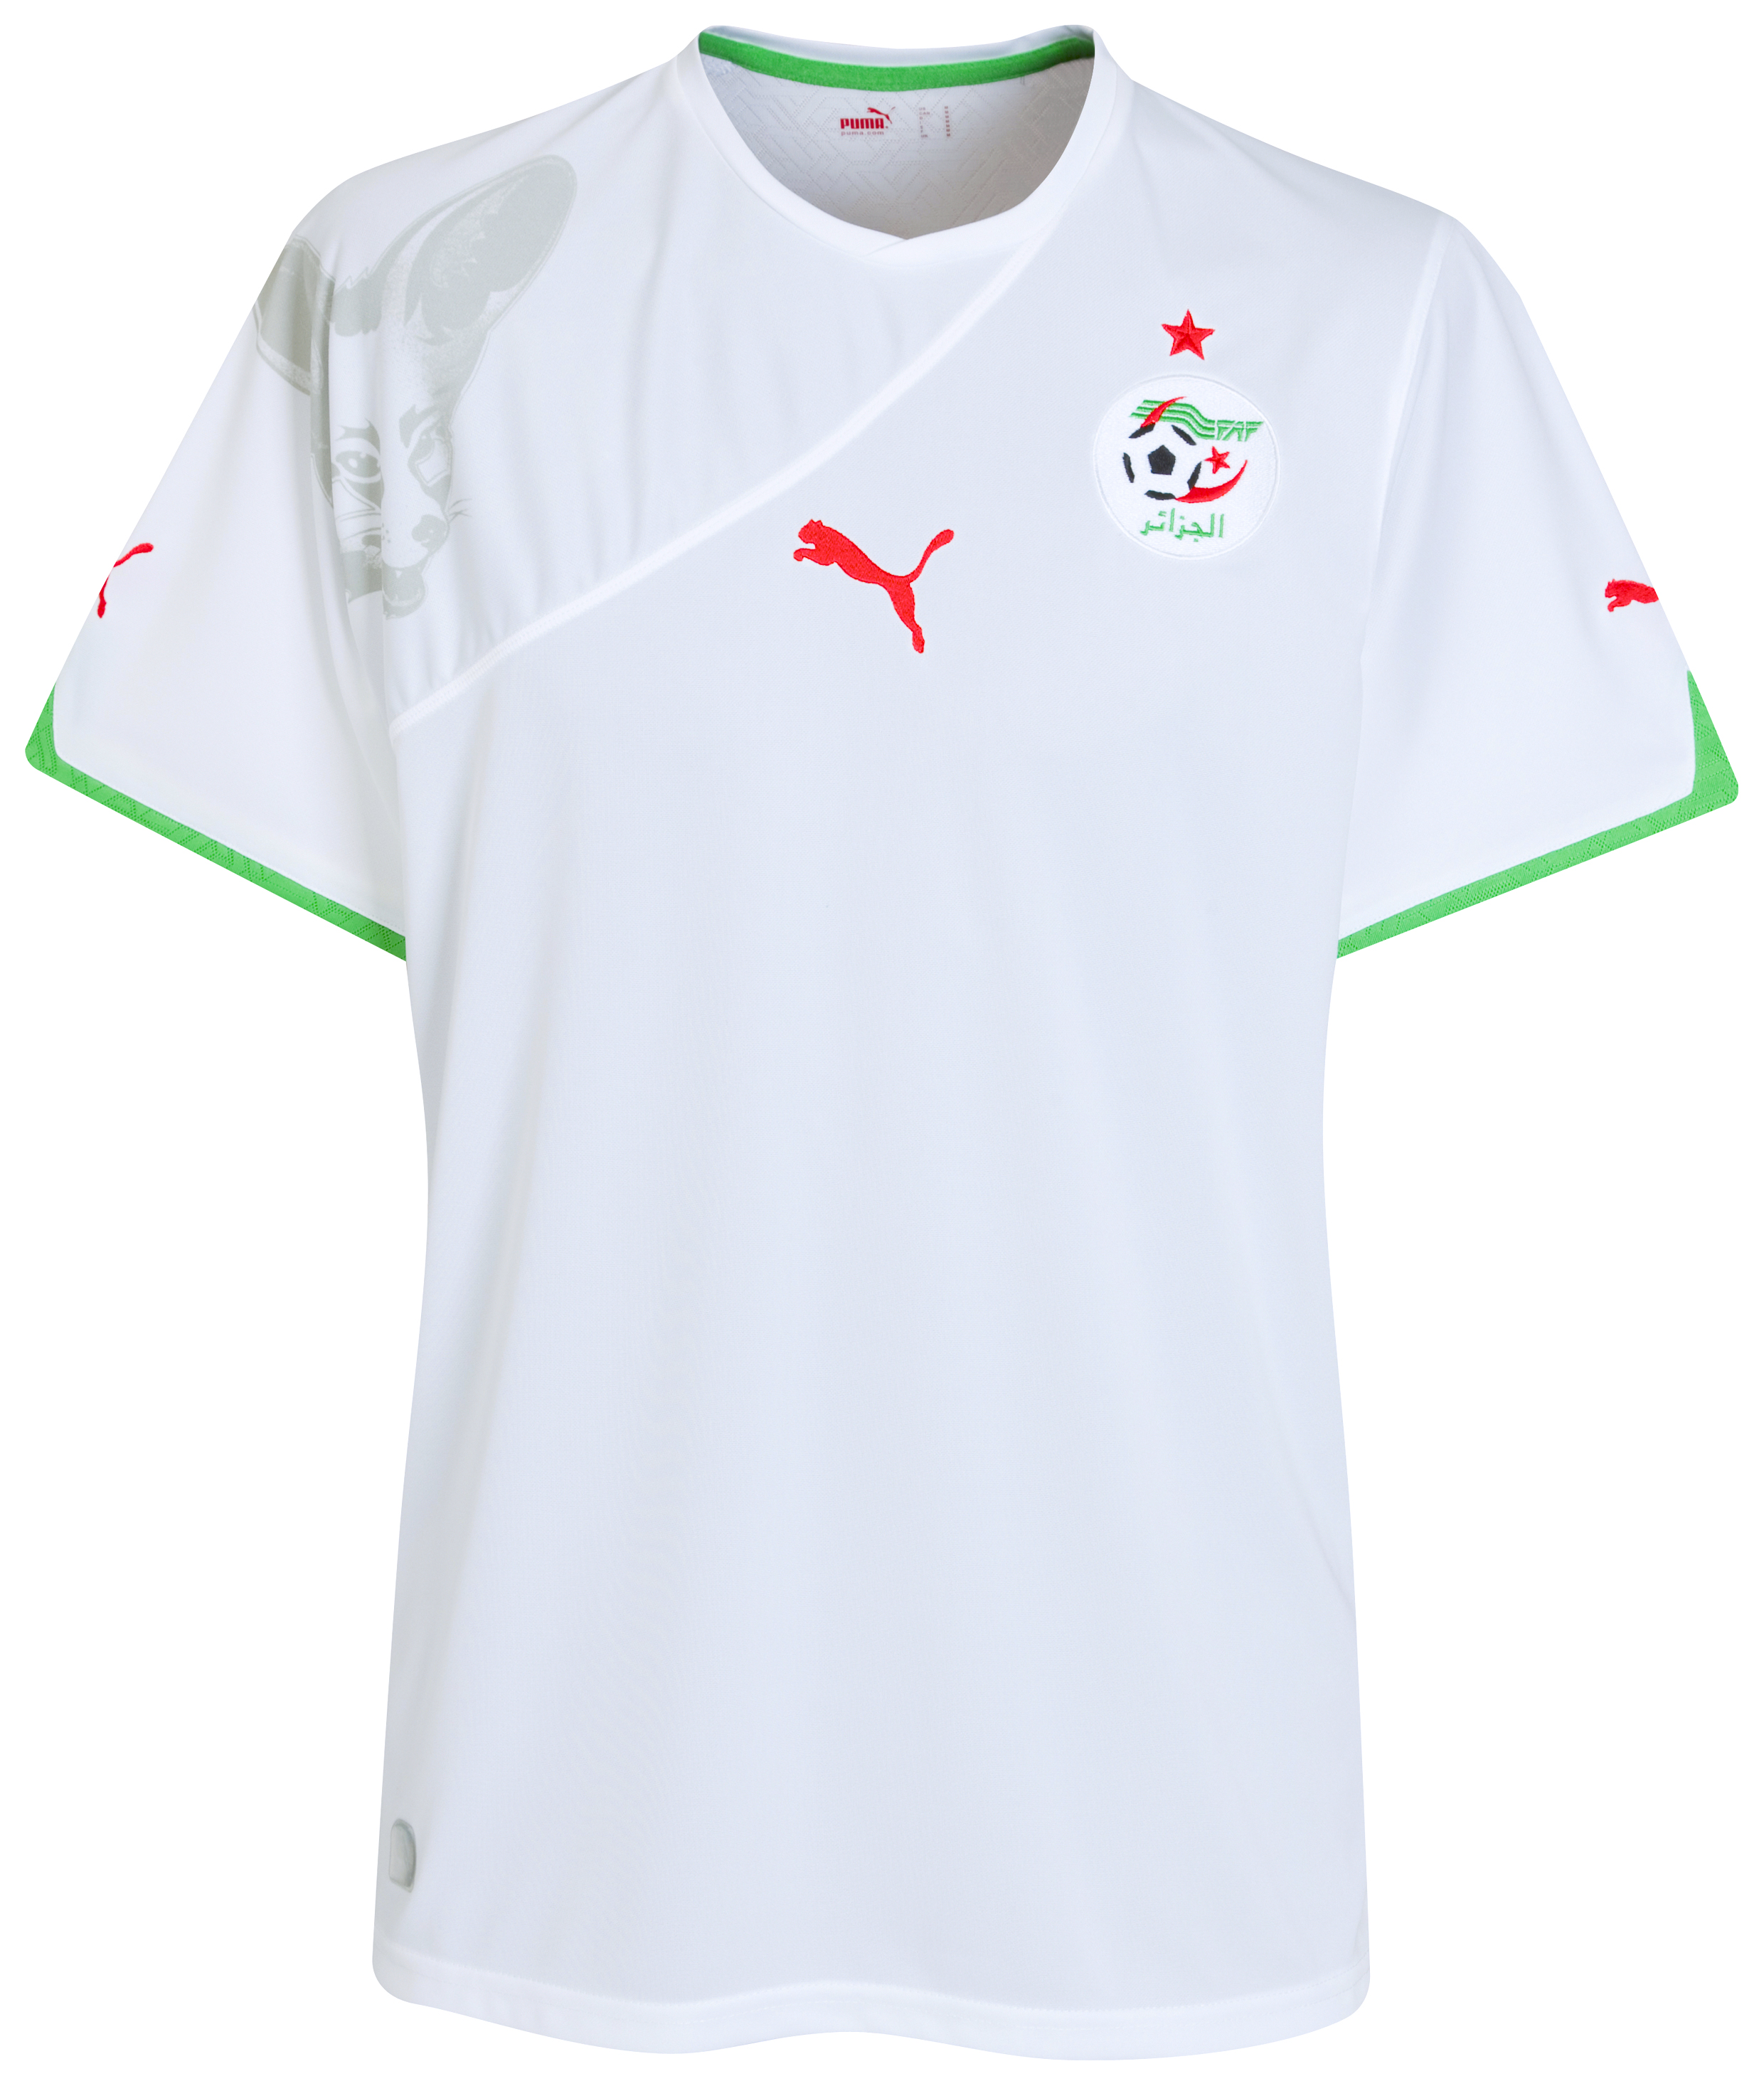 الملابس النهائيه لكأس العالم (2010)بجنوب افريقيا Kb-70198